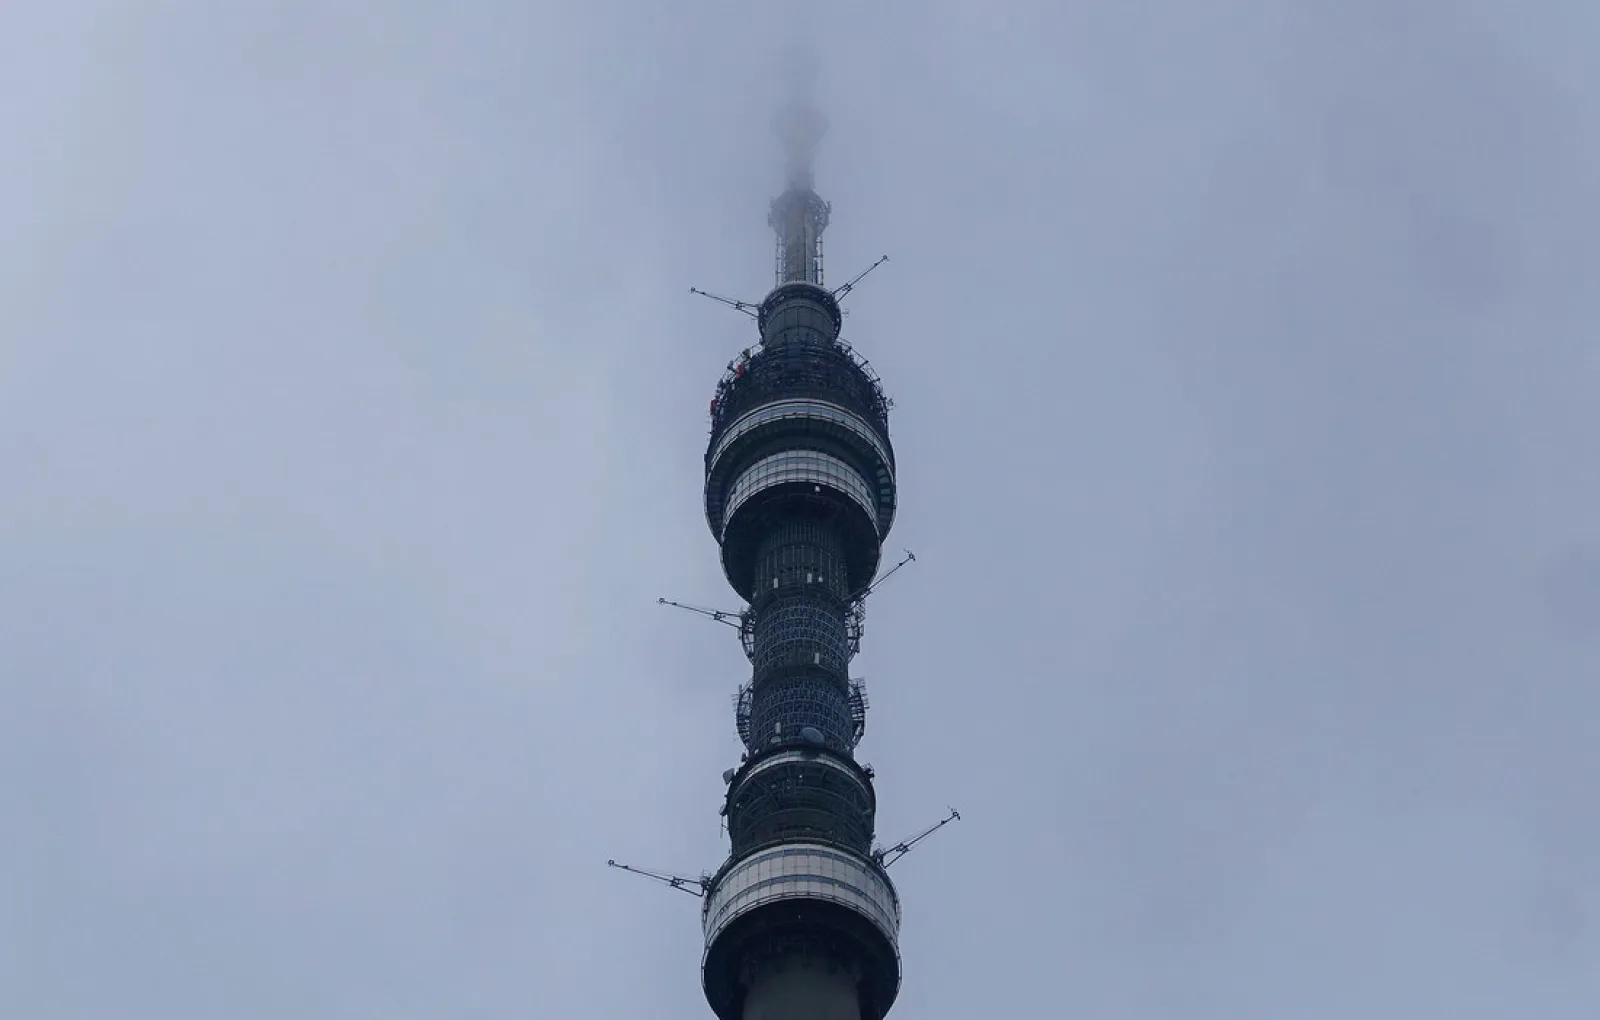 540-метровая красавица: фотопутешествие по Останкинской башне образца нынешнего года